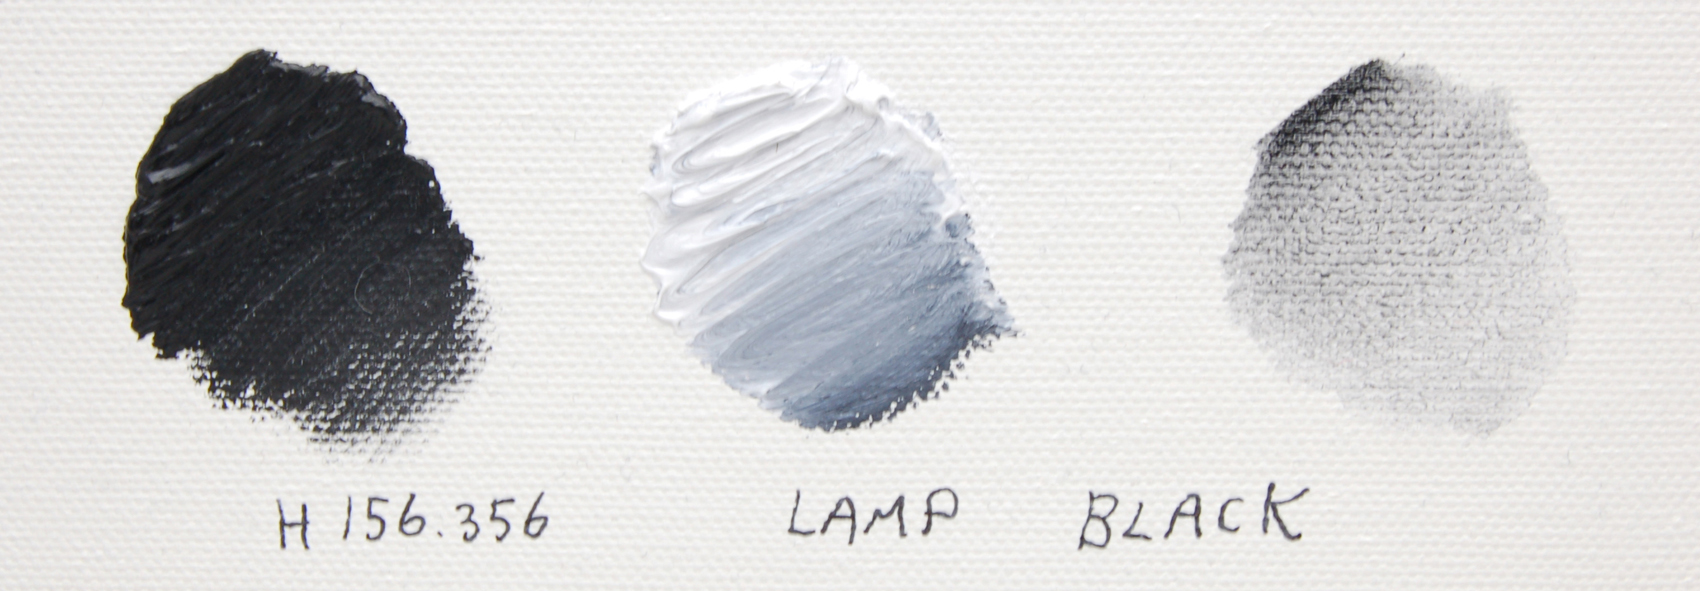 ランプブラック/LAMP BLACK 